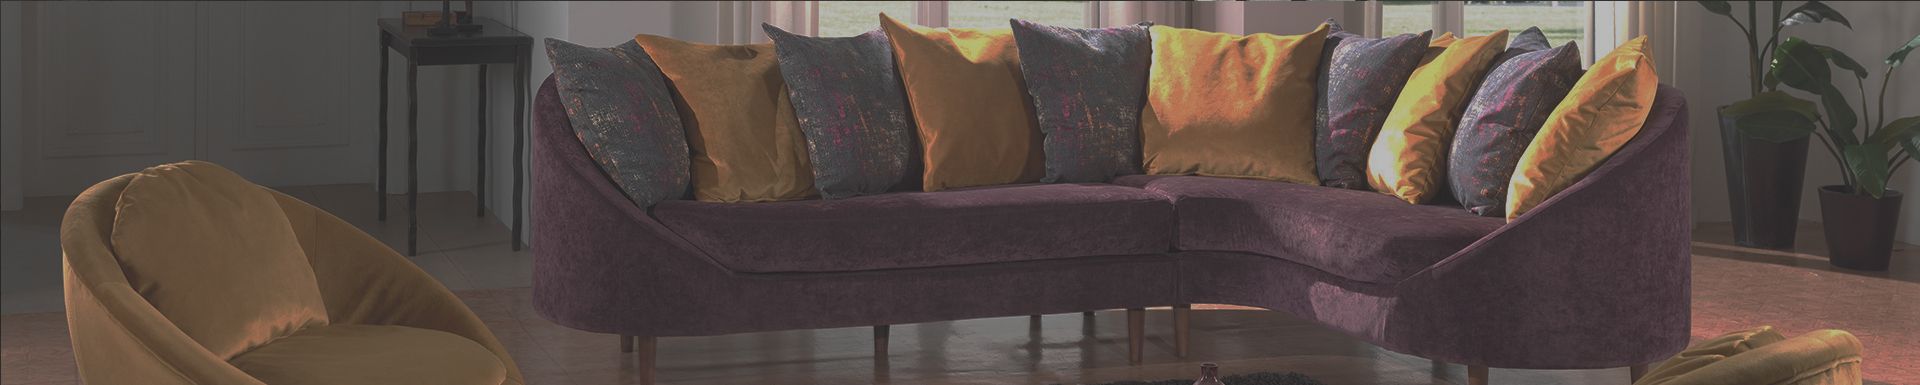 kolorowe poduszki na sofie